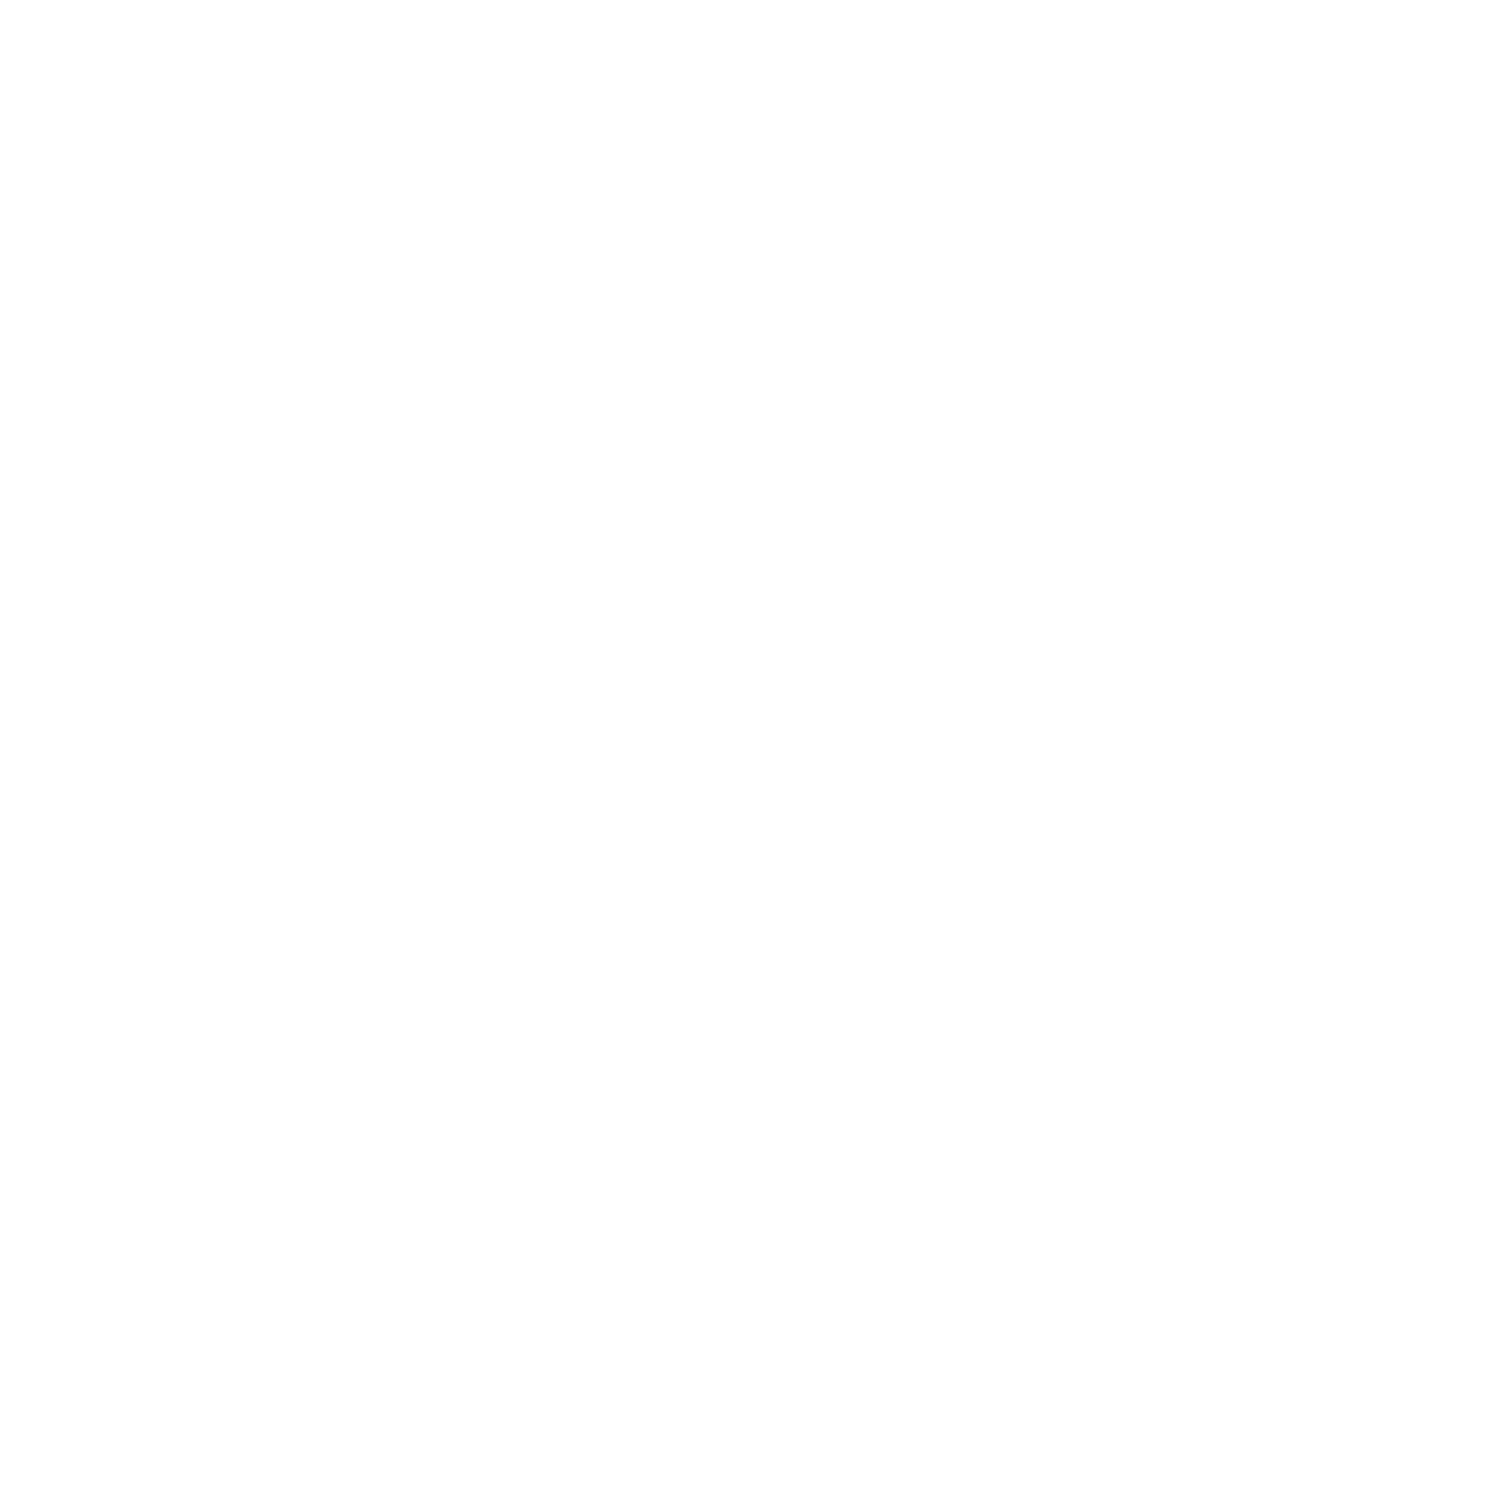 Skyline Design Studio